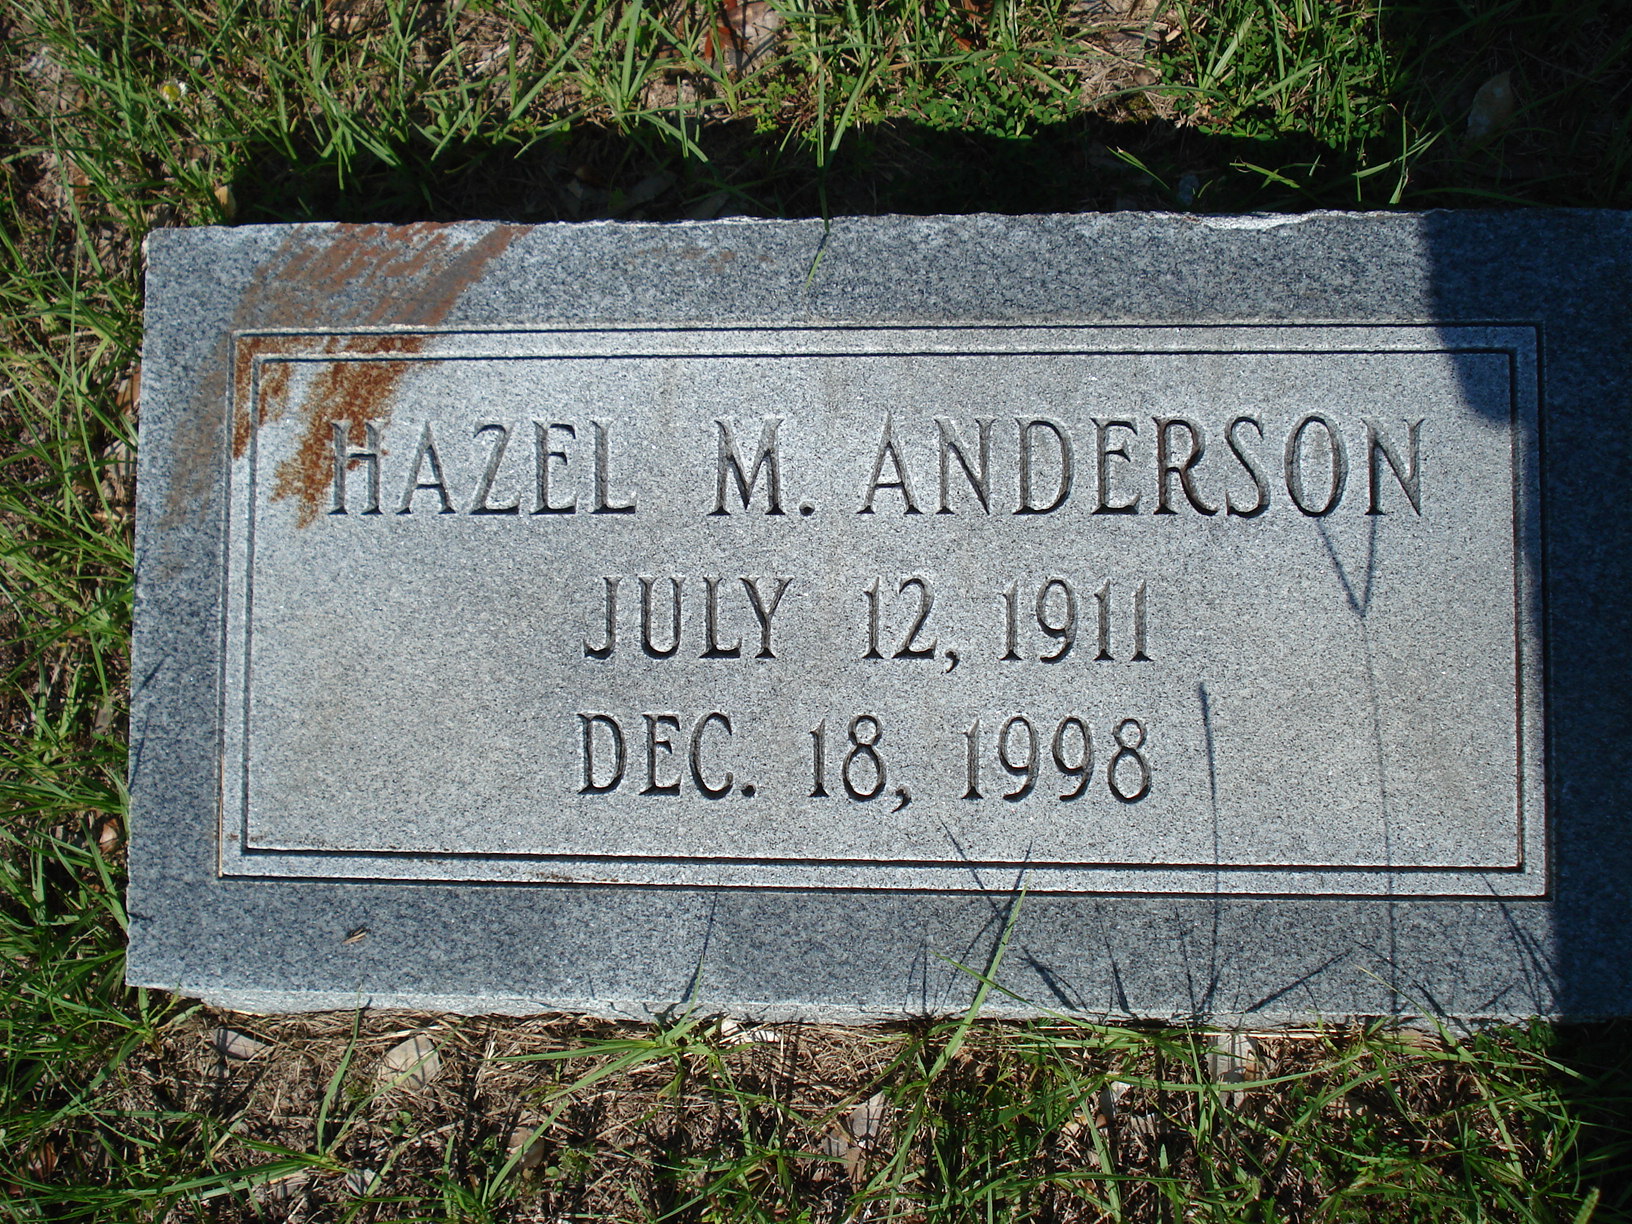 Hazel M. Anderson